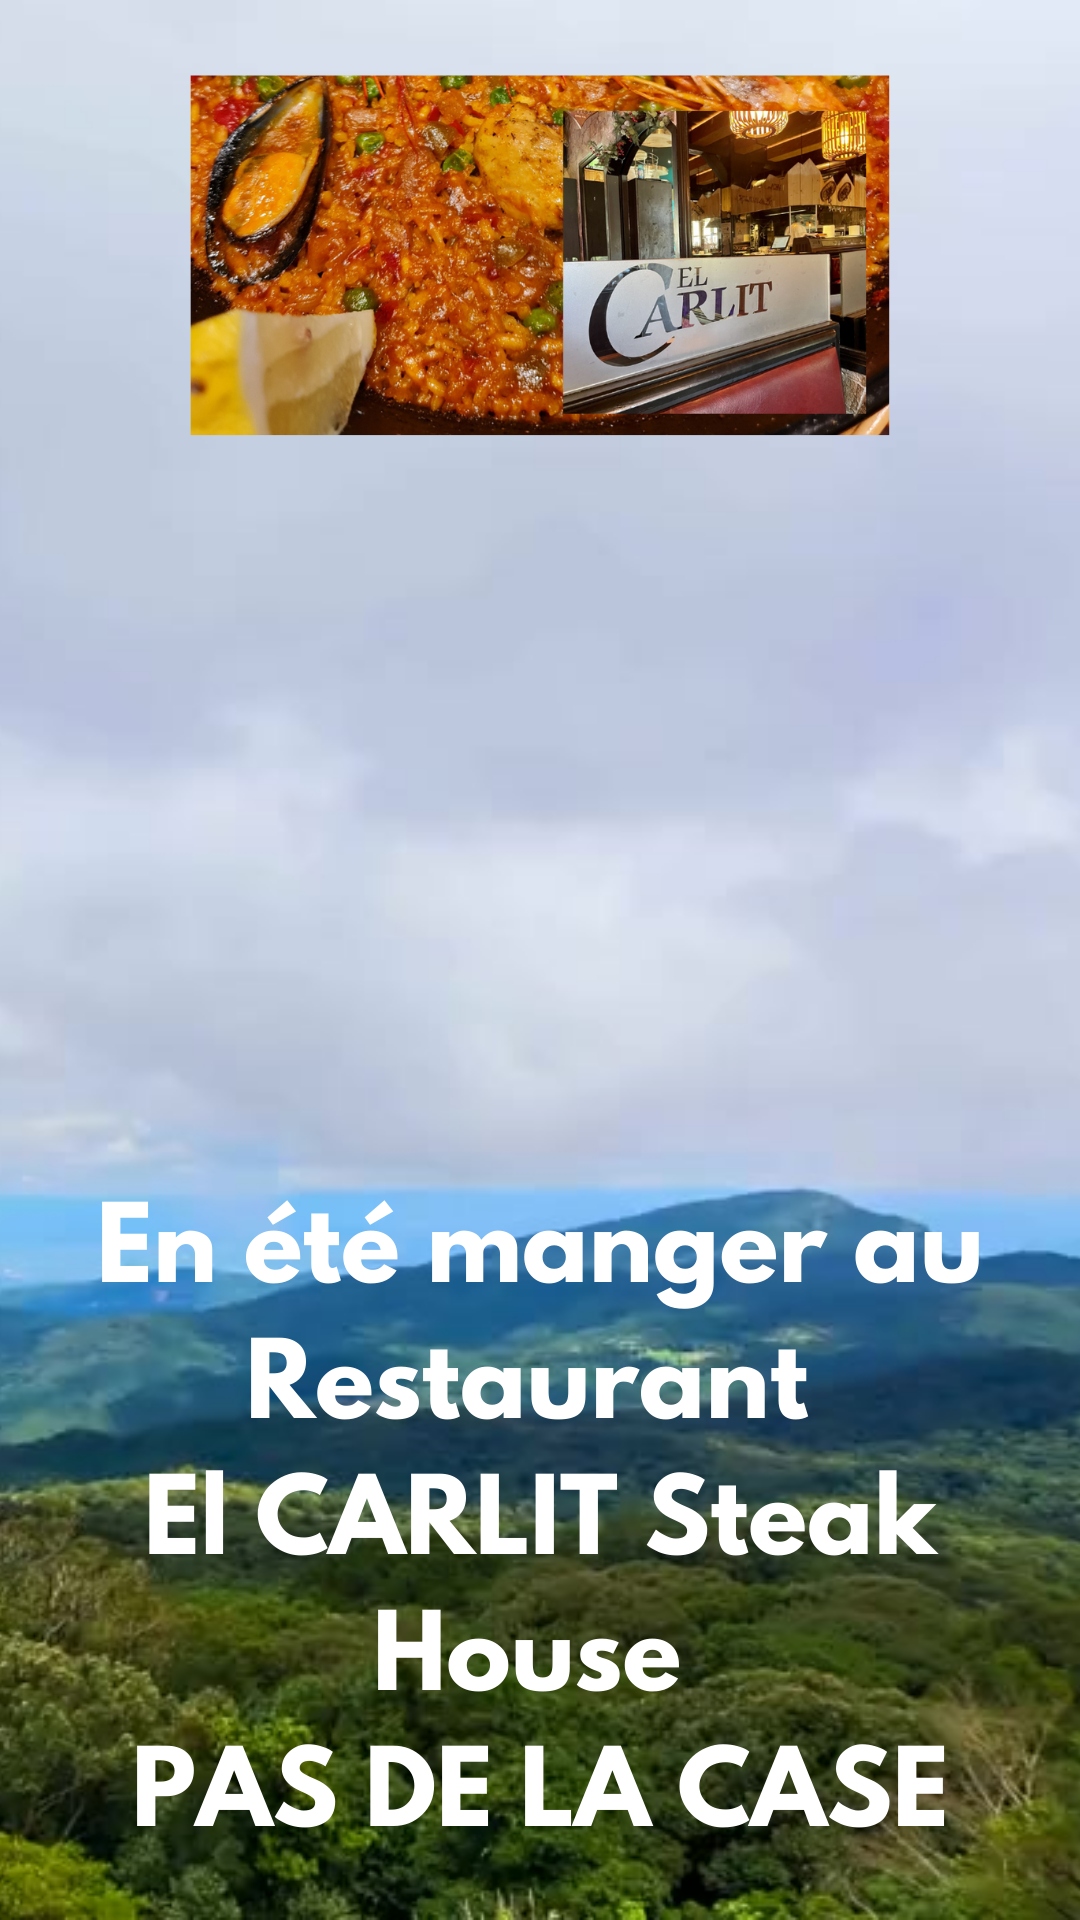 En été manger au Restaurant El CARLIT Steak House PAS DE LA CASE, possiblement le meilleur Restaurant du Pas de la Case en Andorre.